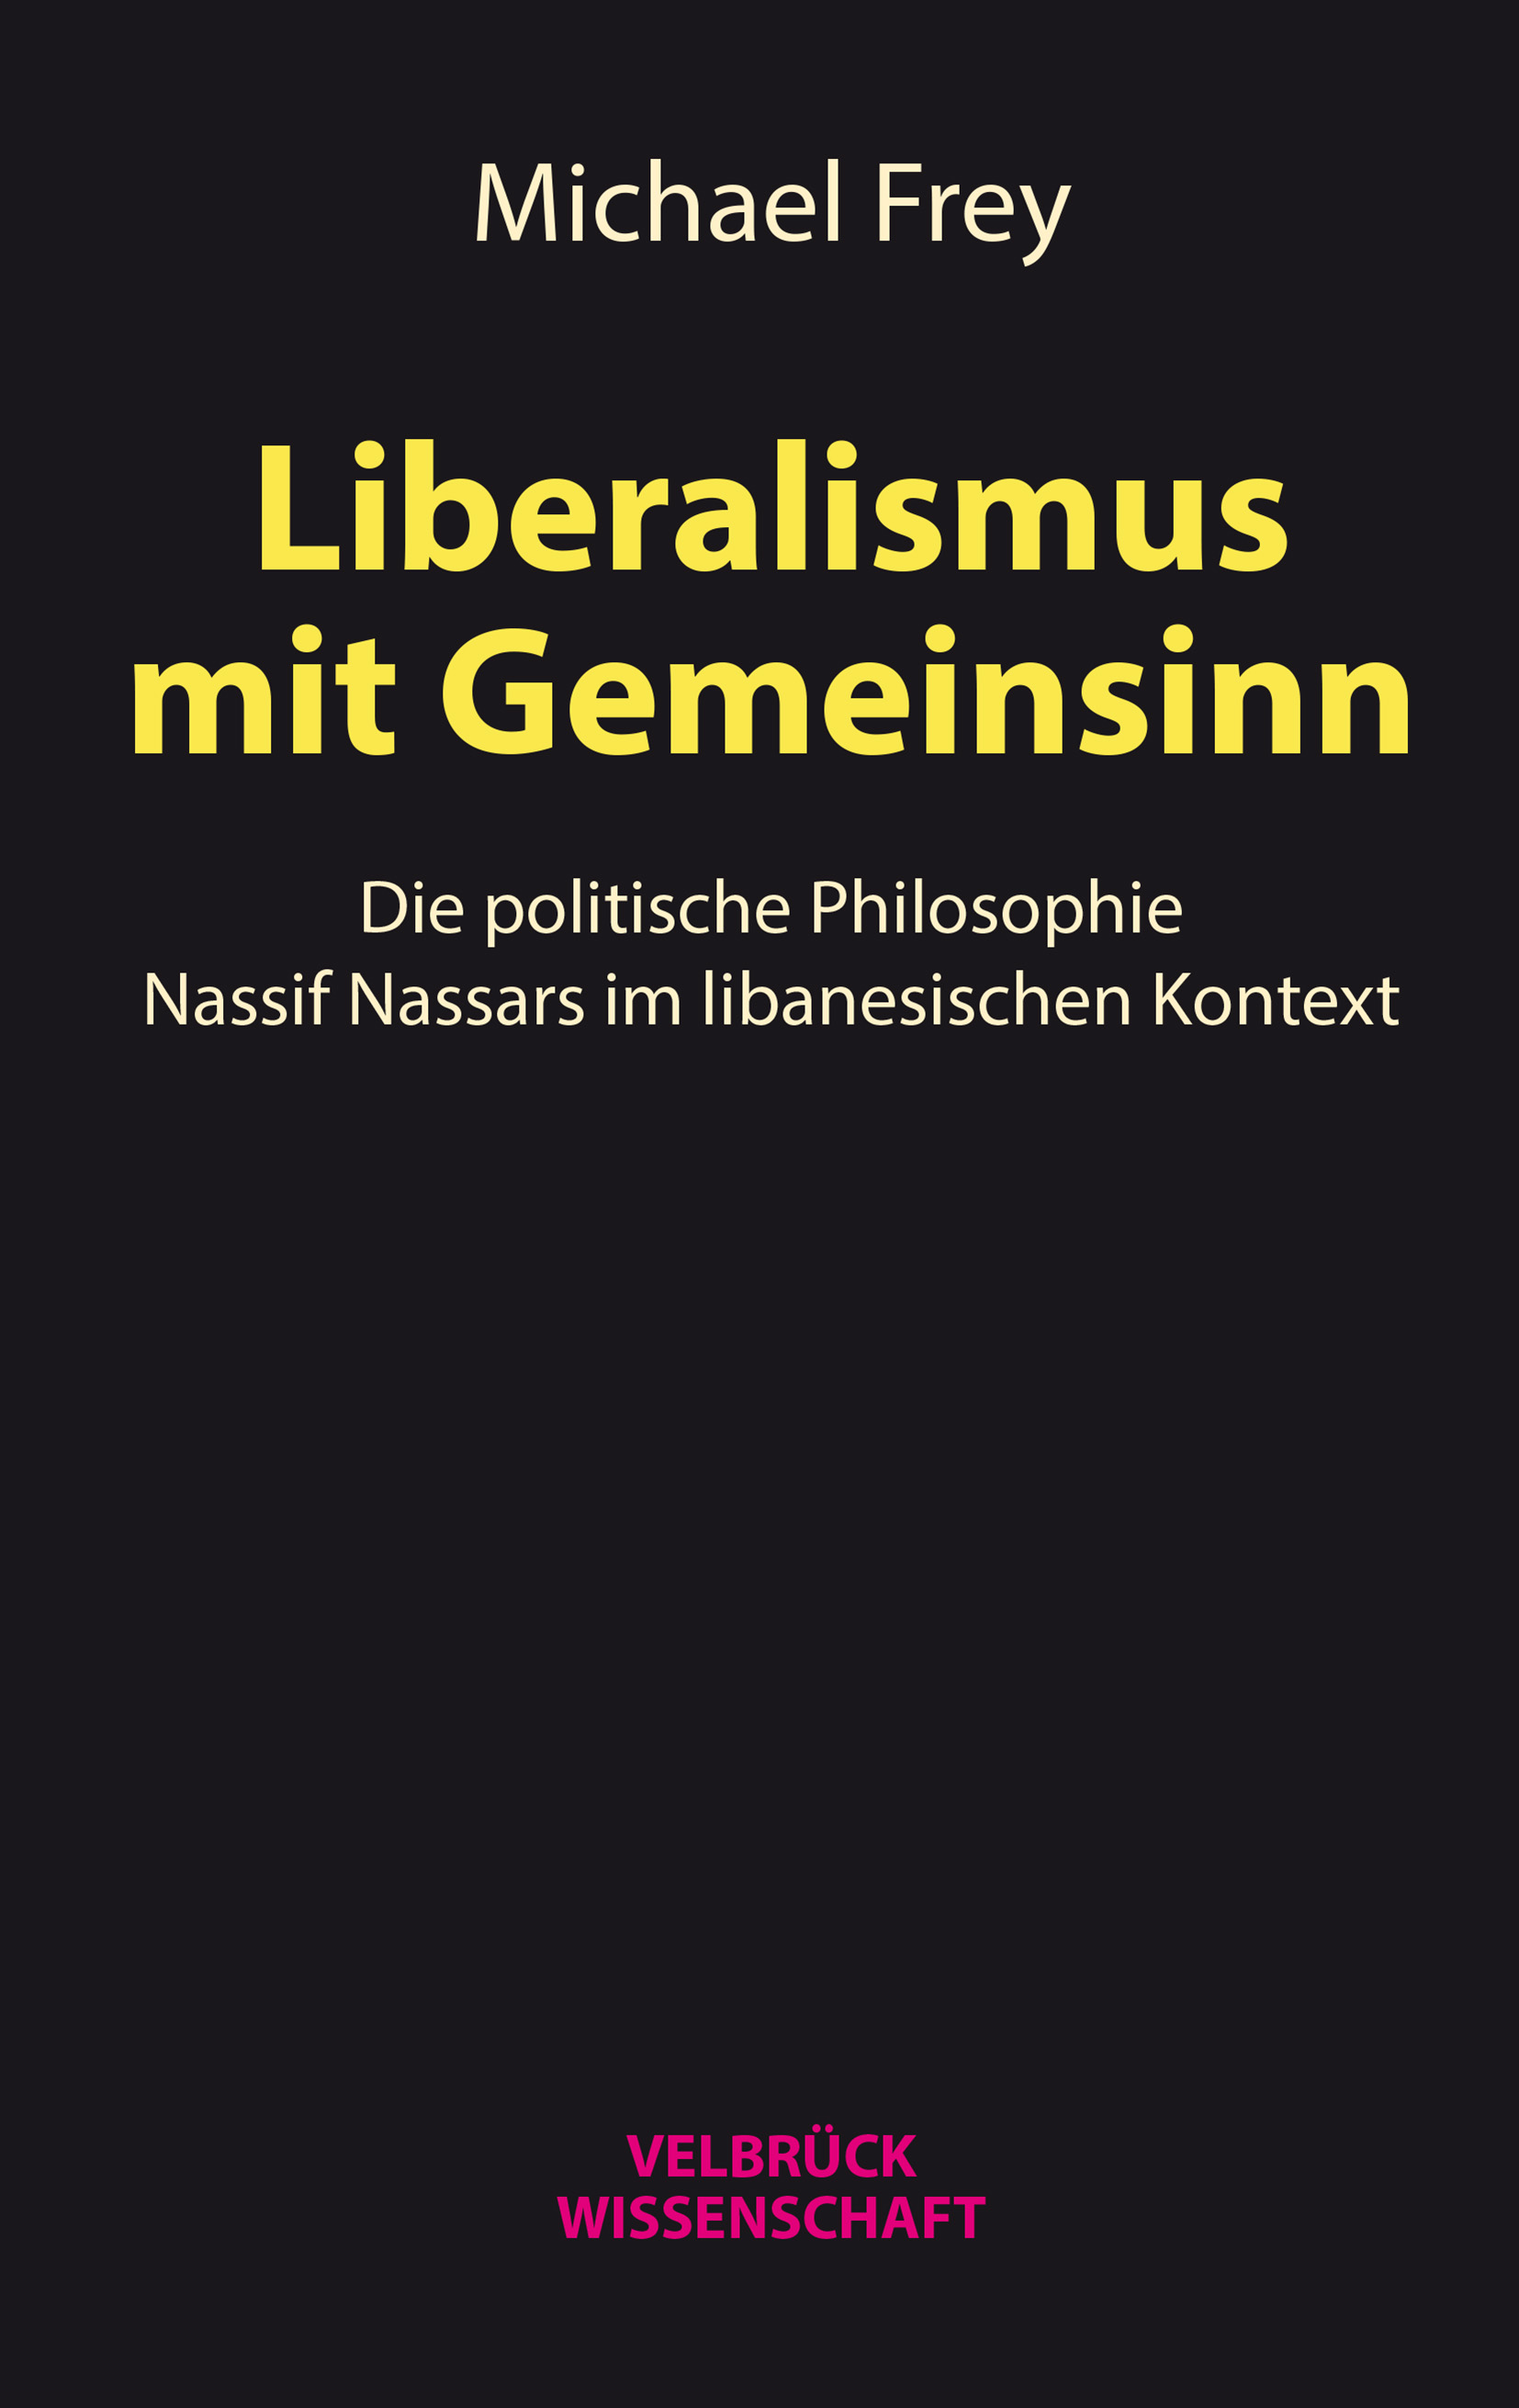 Buchcover "Liberalismus mit Gemeinsinn. Die politische Philosophie Nassif Nassars im libanesischen Kontext" von Michael Frey im Verlag Velbrück 